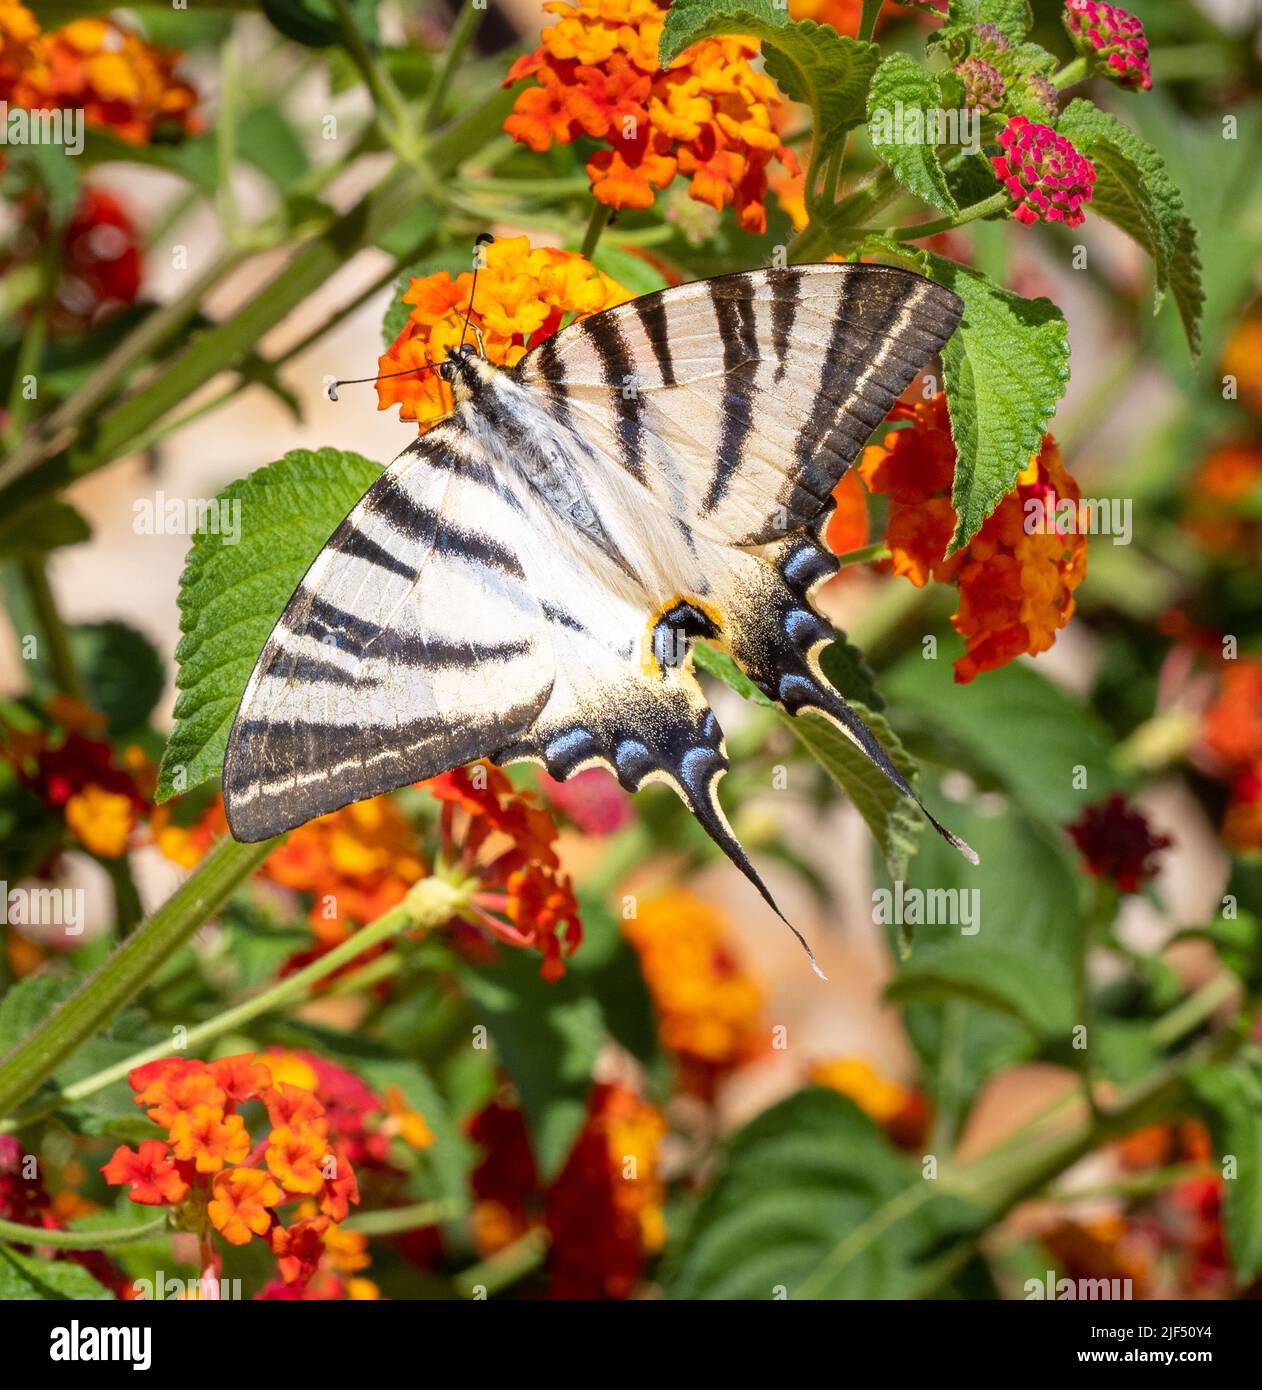 Der seltene Schwalbenschwanz Iphiclides podalirius auf orangen nektarreichen Lantana blüht in einem Garten auf Lefkada auf den ionischen Inseln Griechenlands Stockfoto